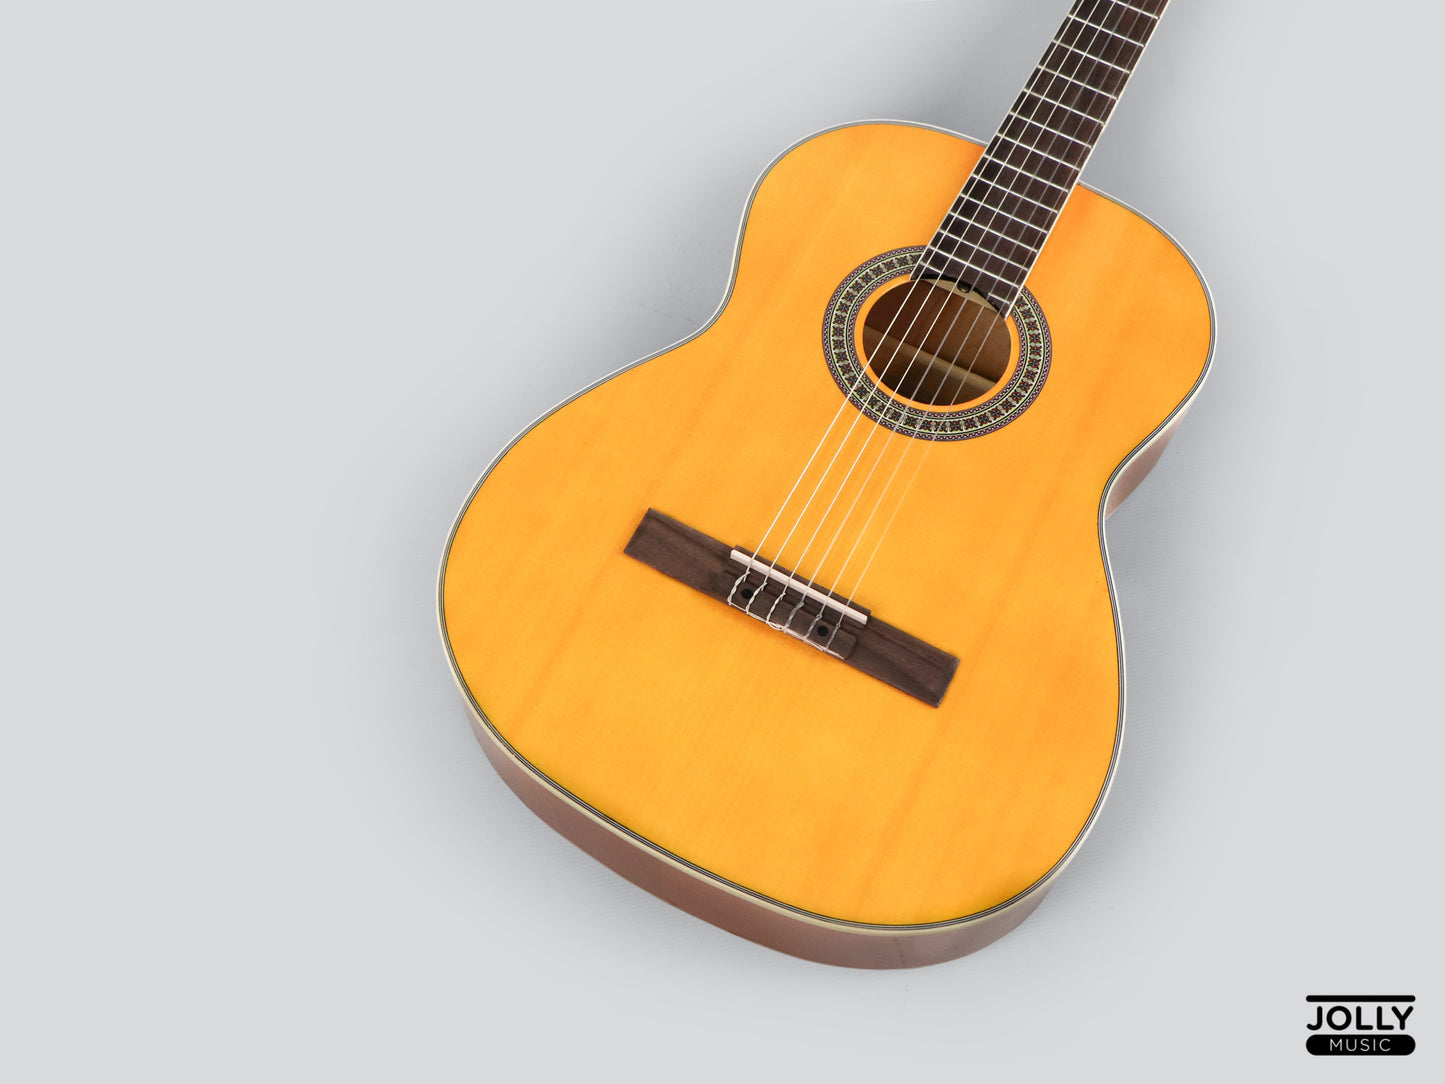 Deviser L-310-39-YN Spruce Top Classical Guitar (Natural)